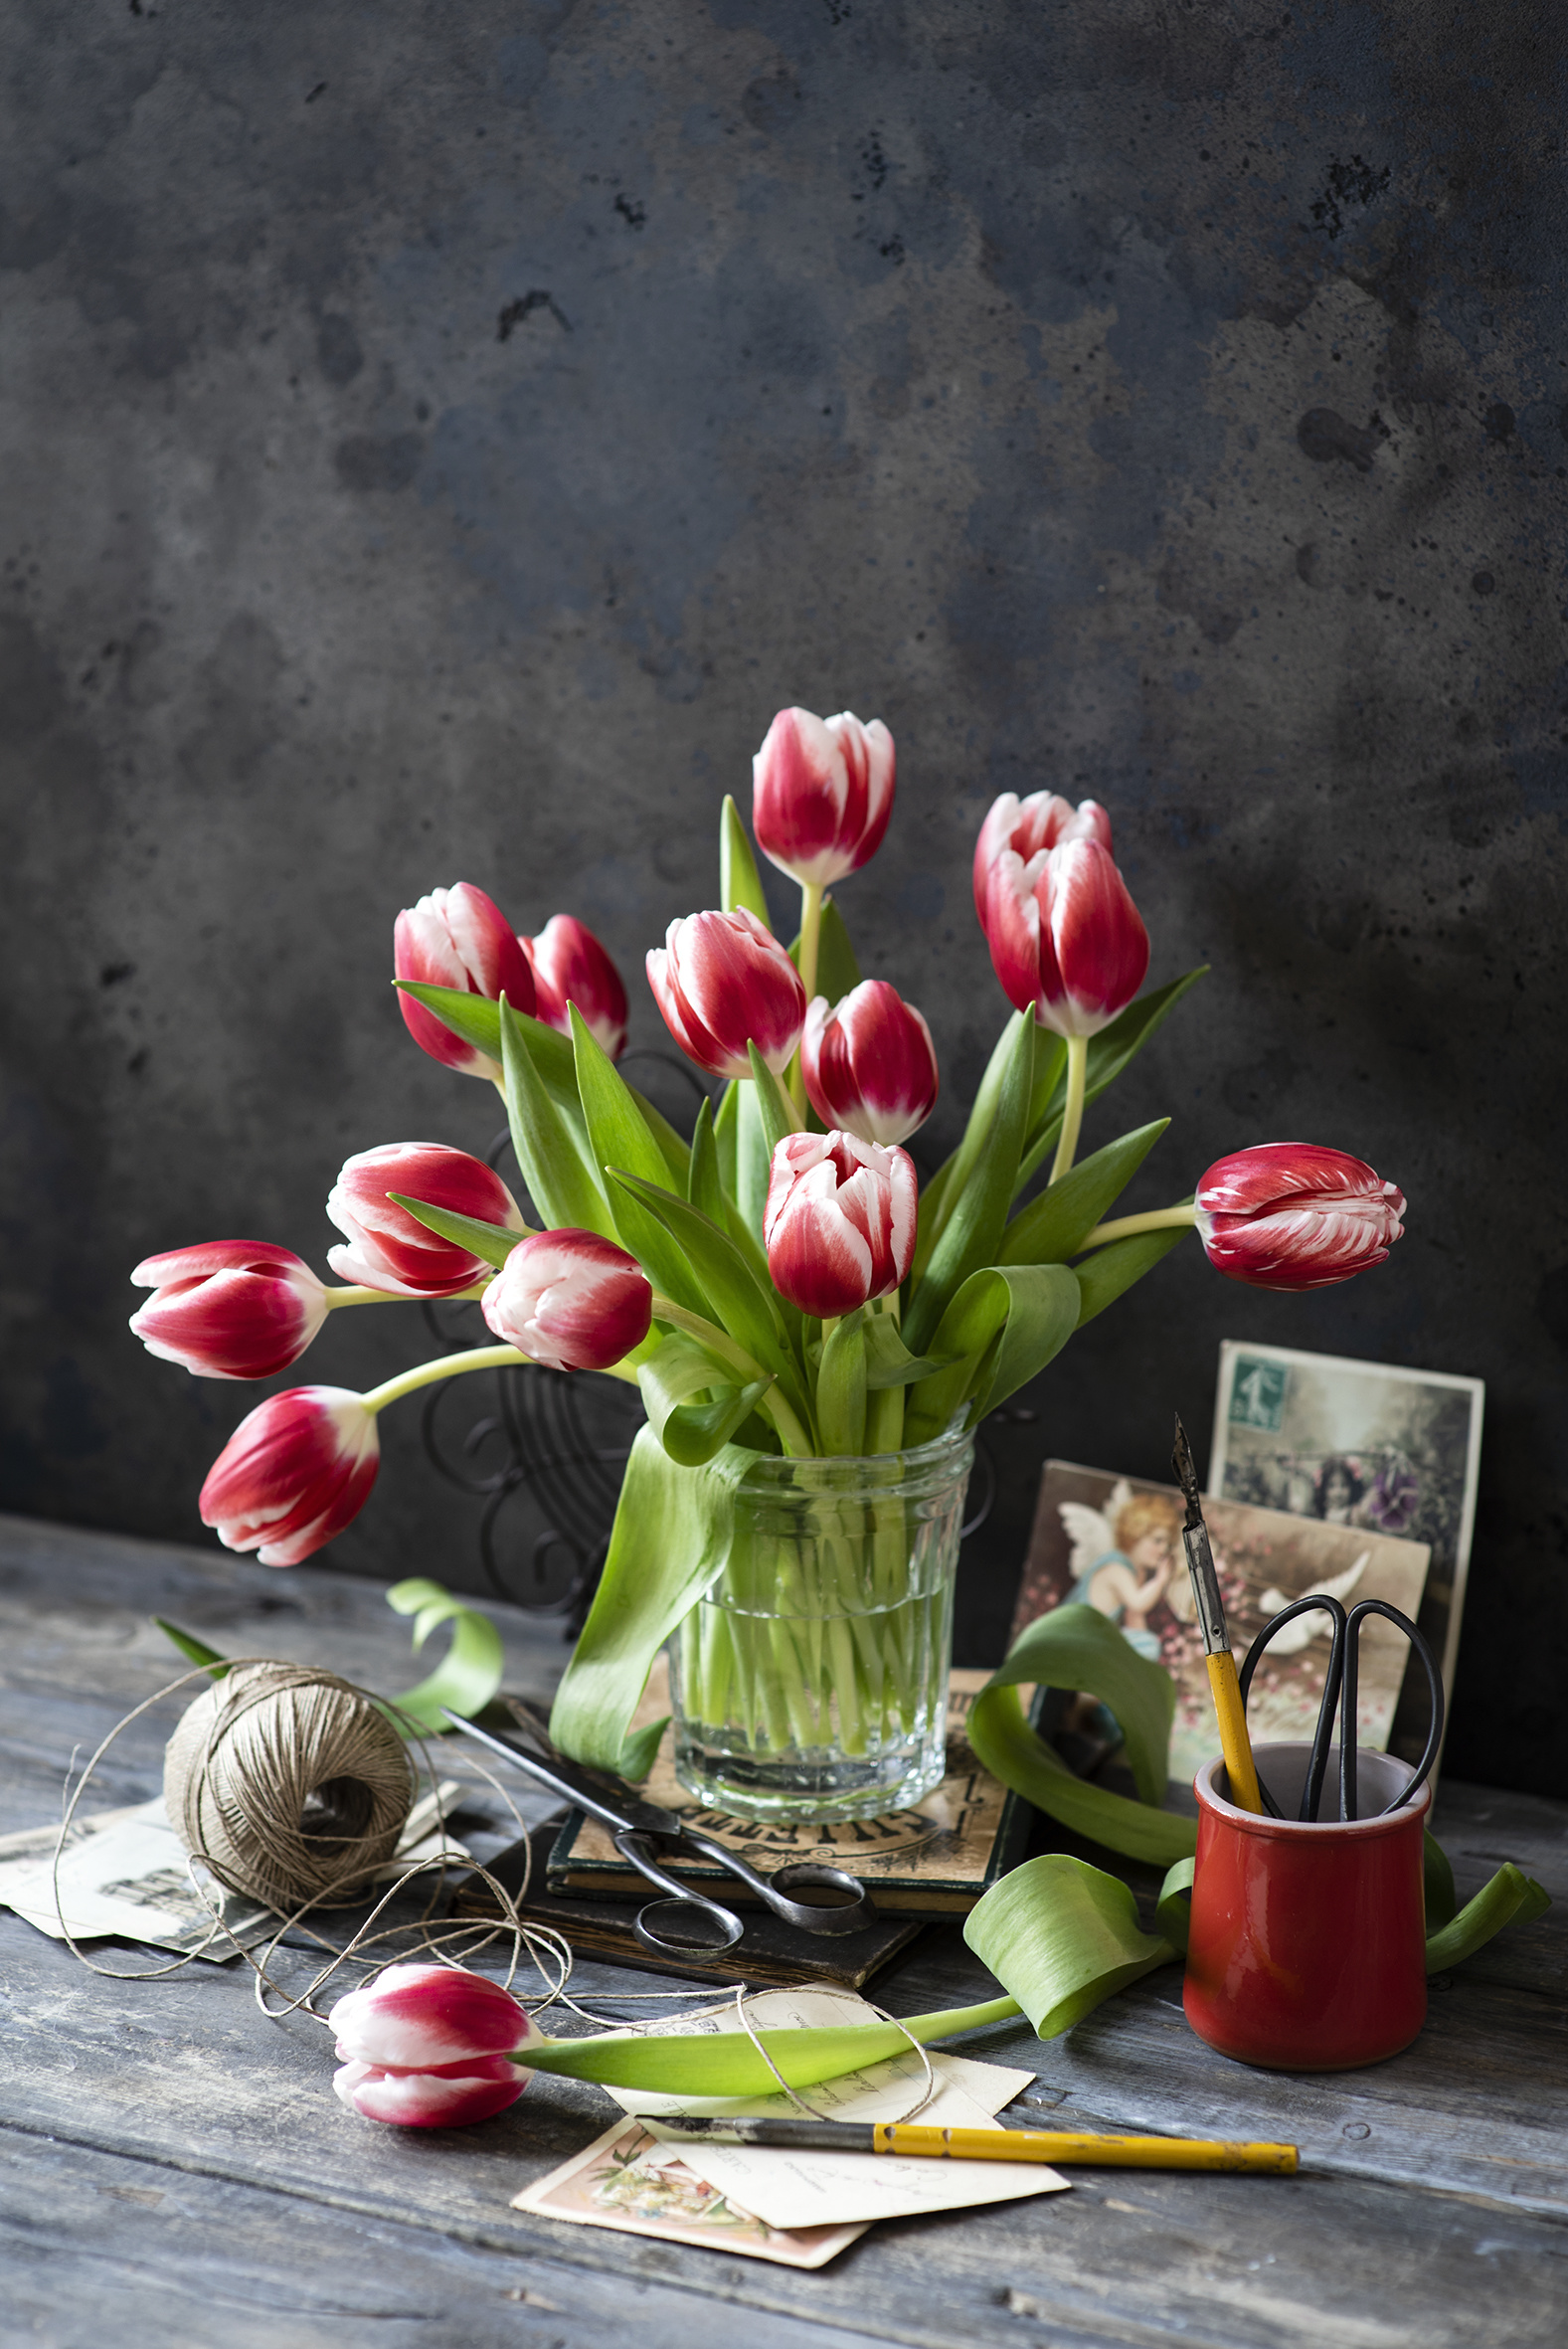 Картинка тюльпан Цветы Ваза Натюрморт Доски  для мобильного телефона Тюльпаны цветок вазе вазы